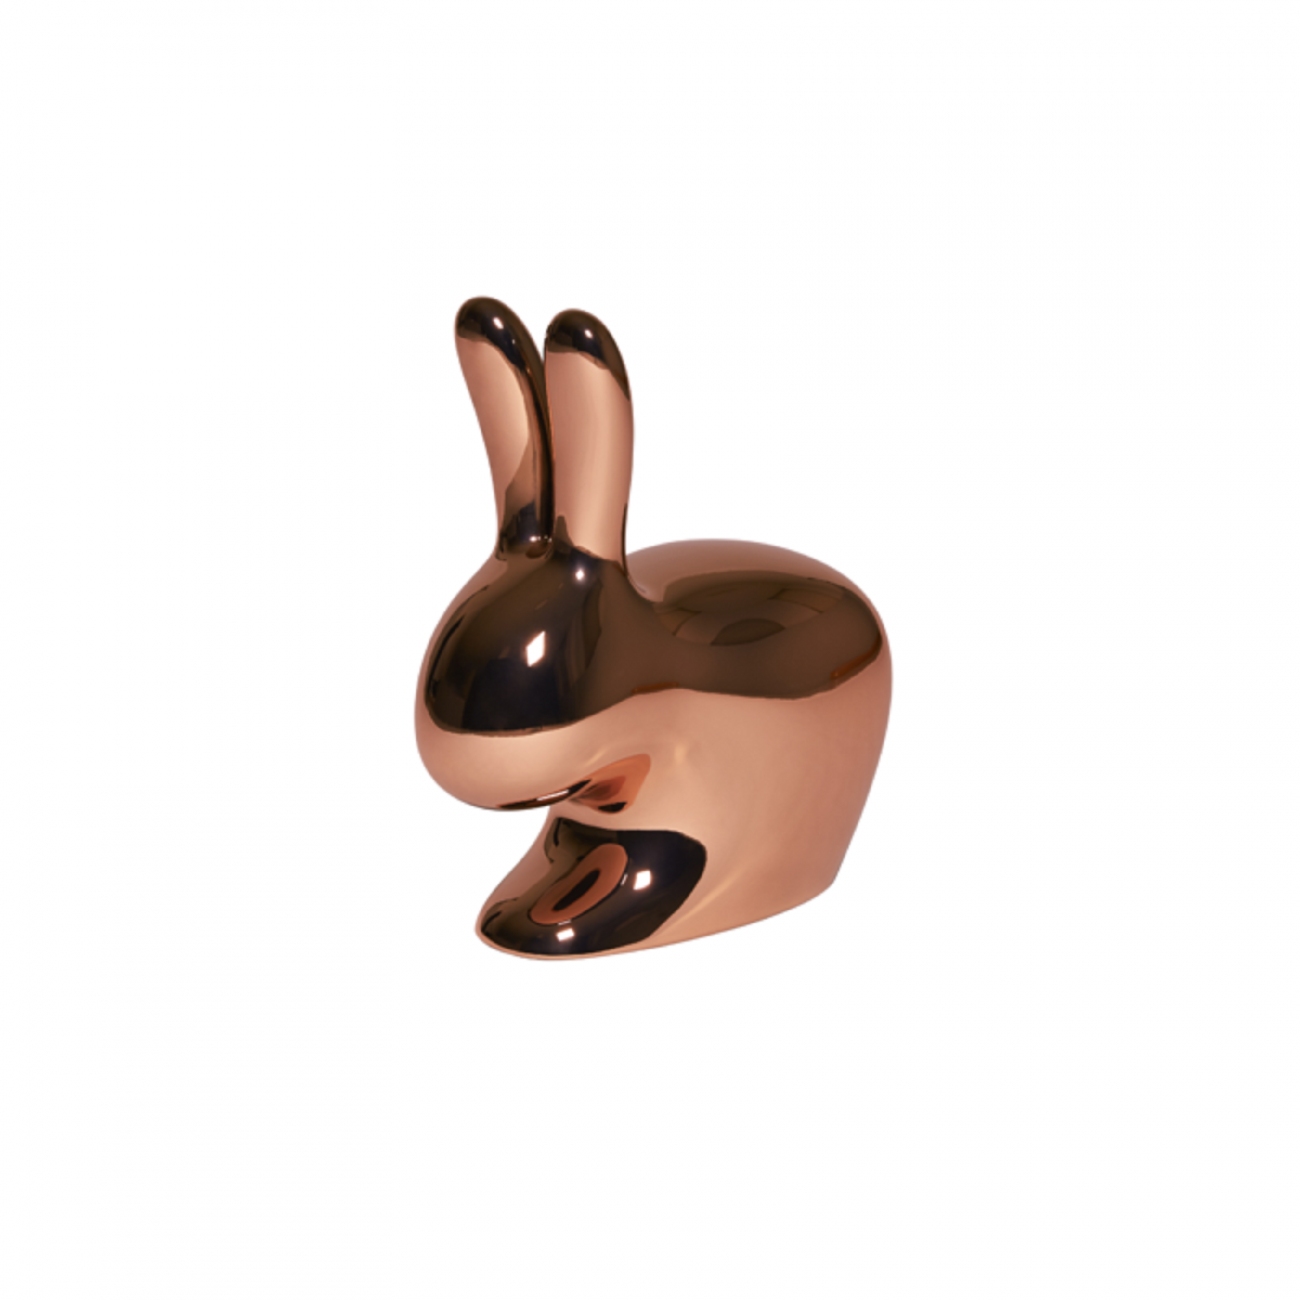 Qeeboo Rabbit Chair Baby Metal Copper